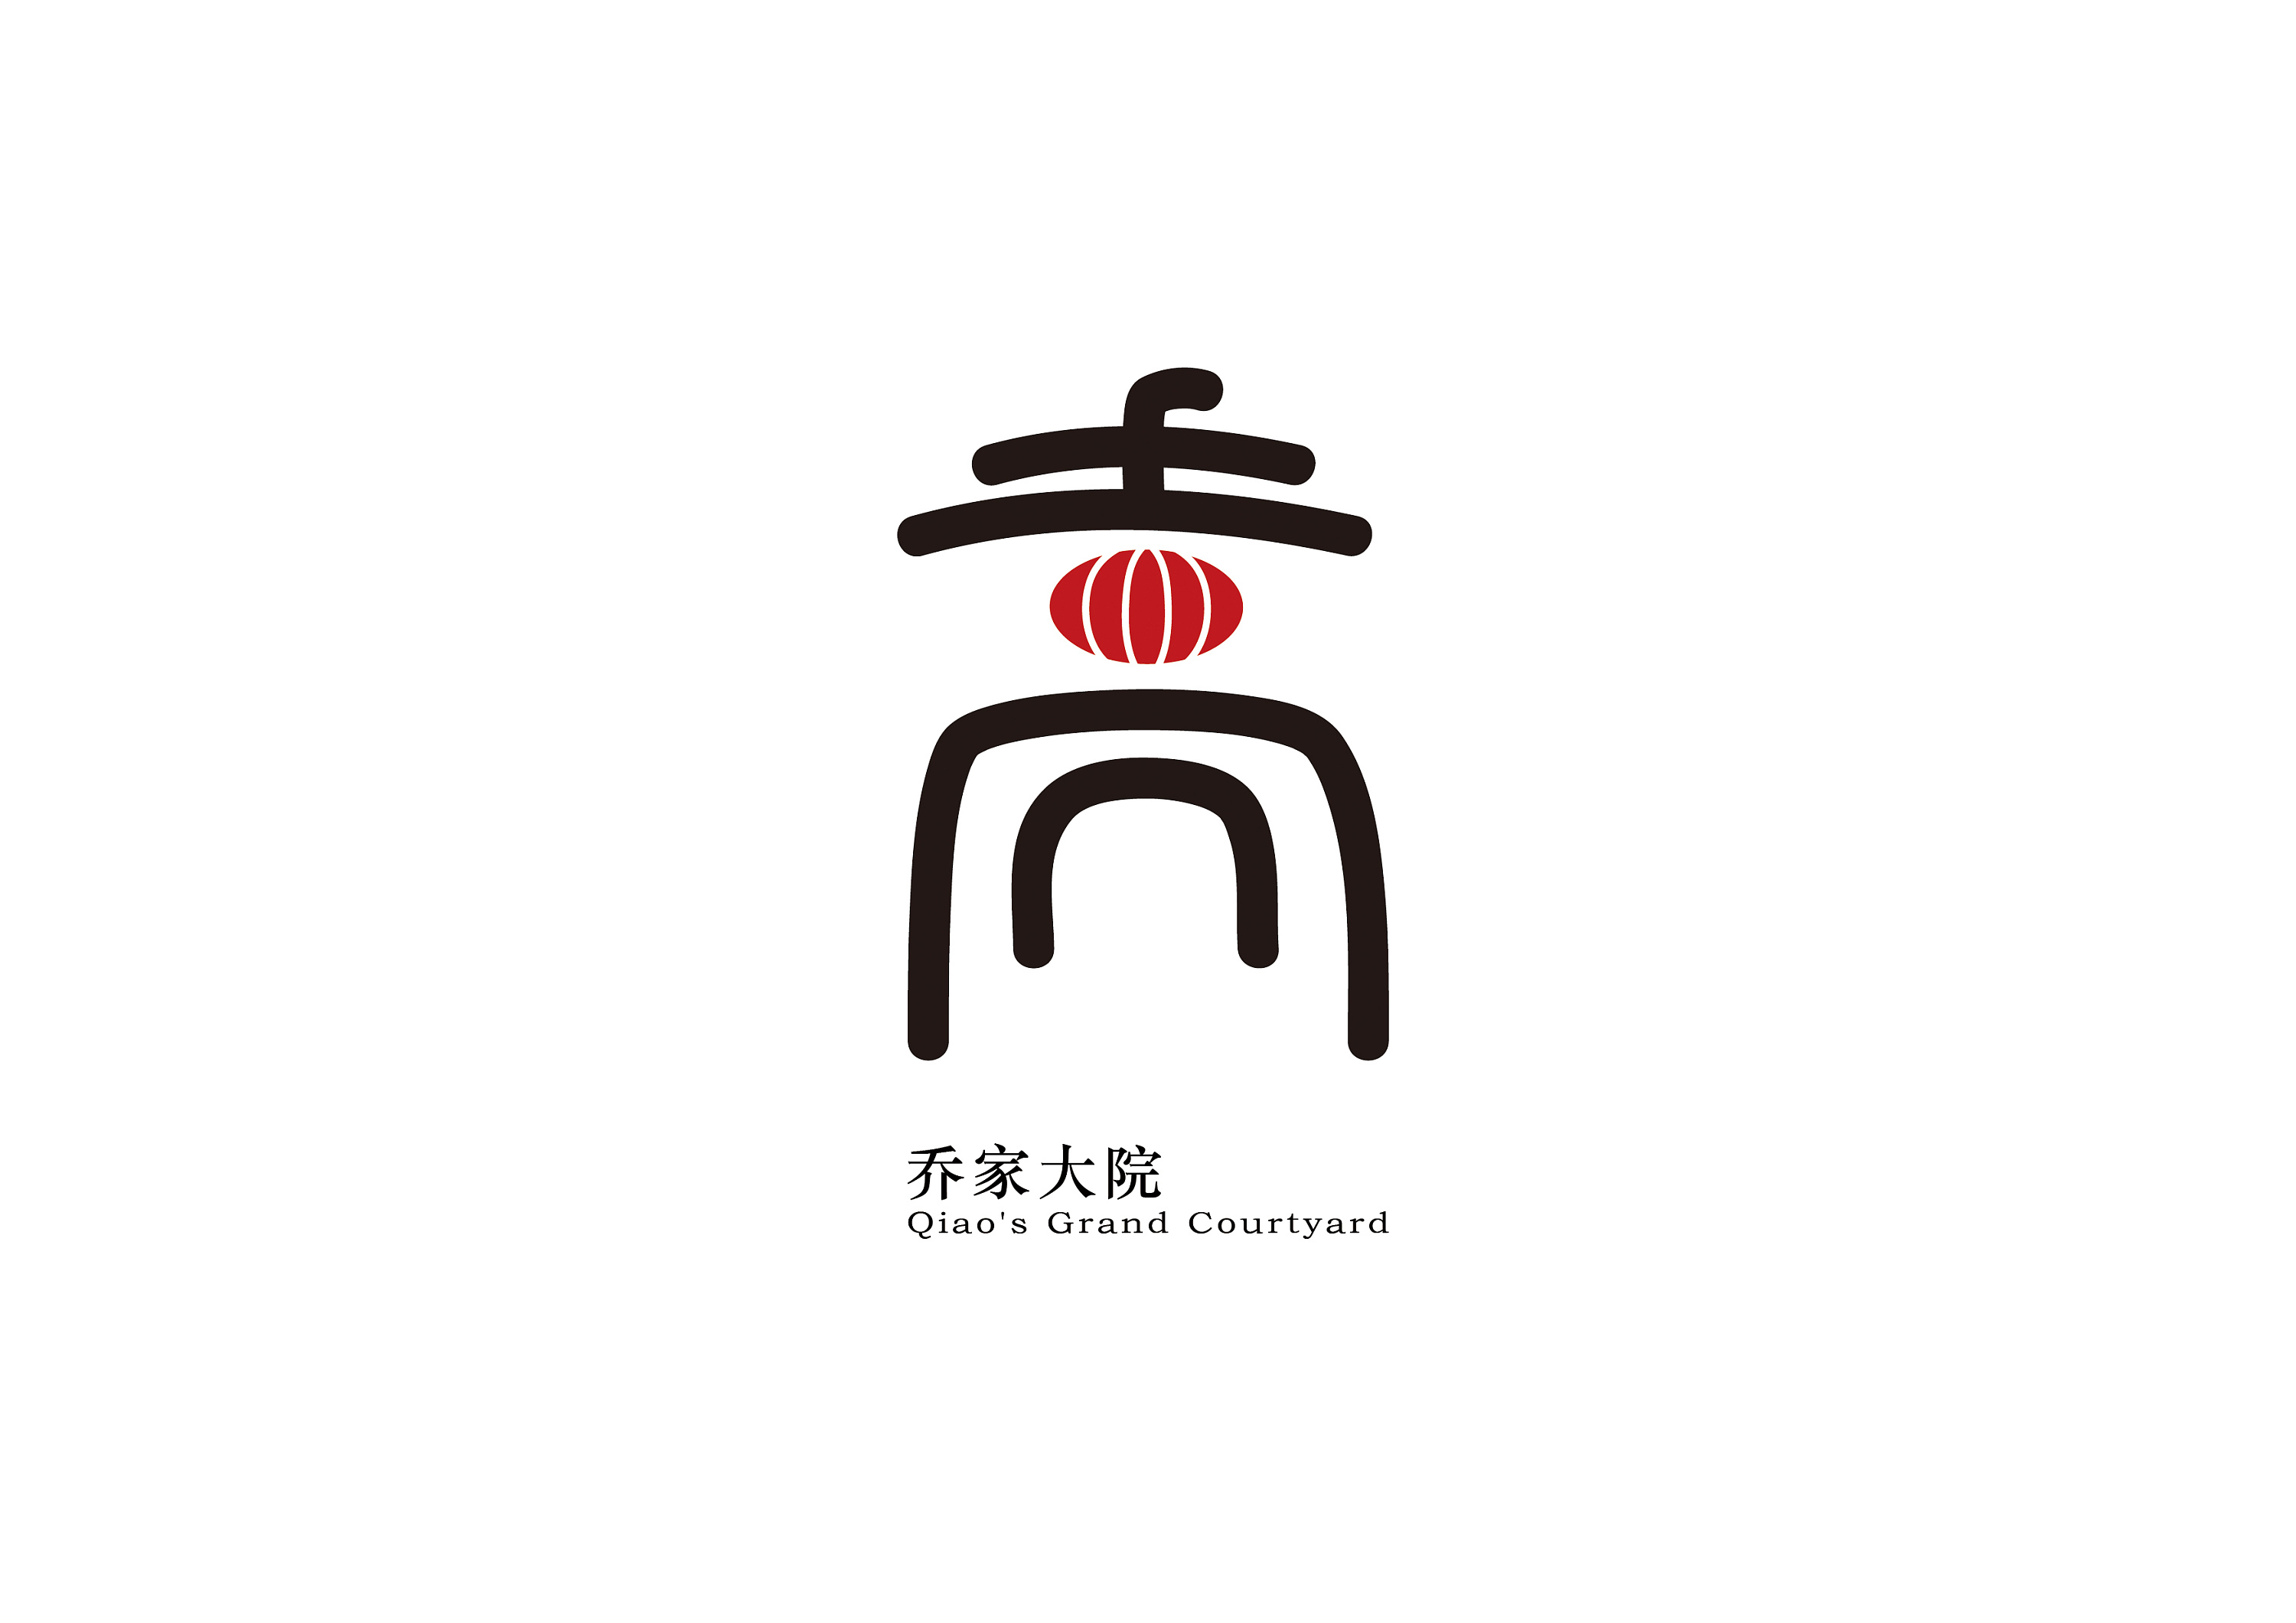 山西名胜logo再设计